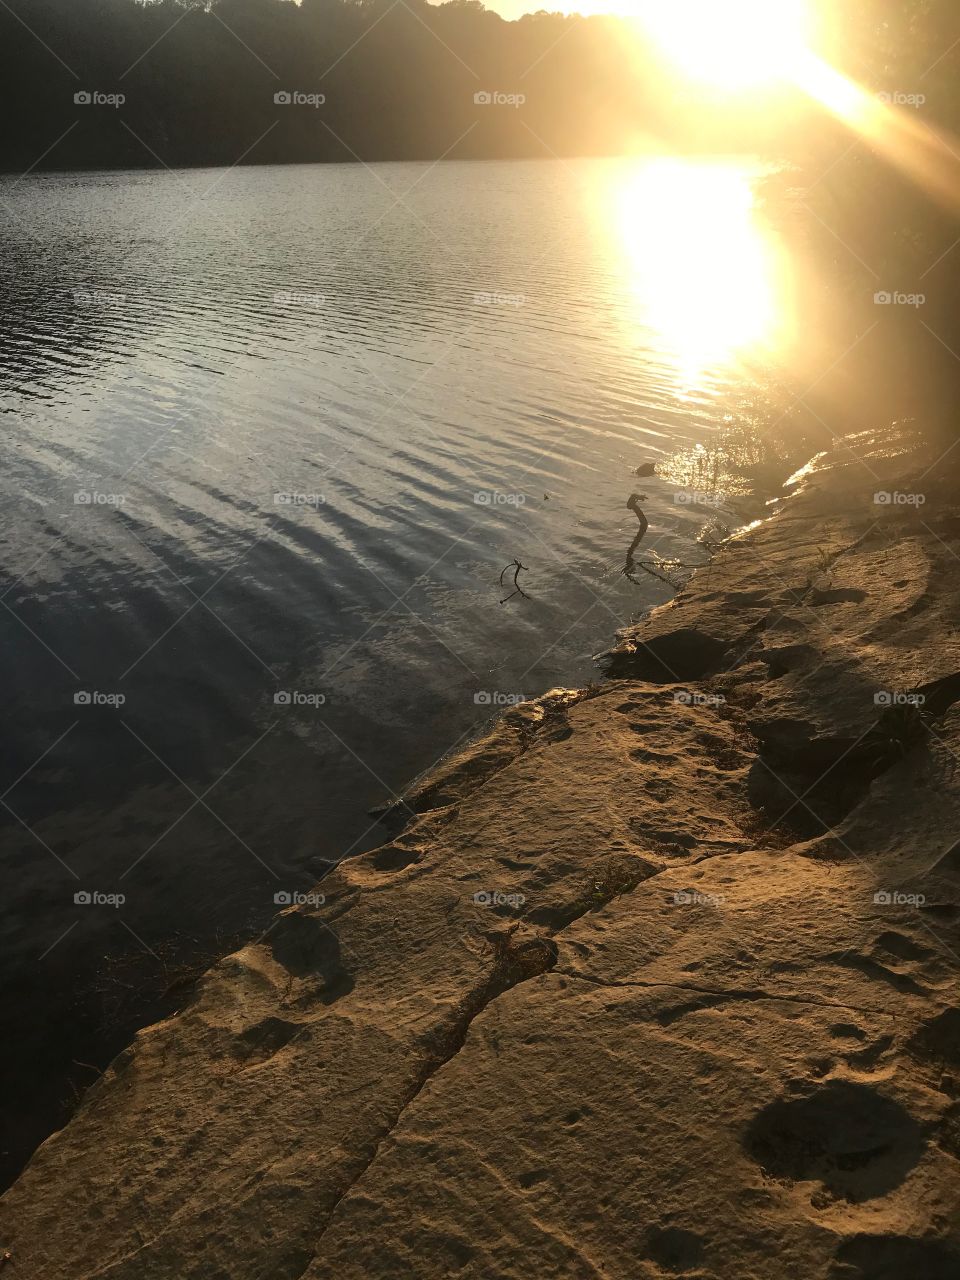 Sunset reflecting on lake surface with smooth stone shoreline